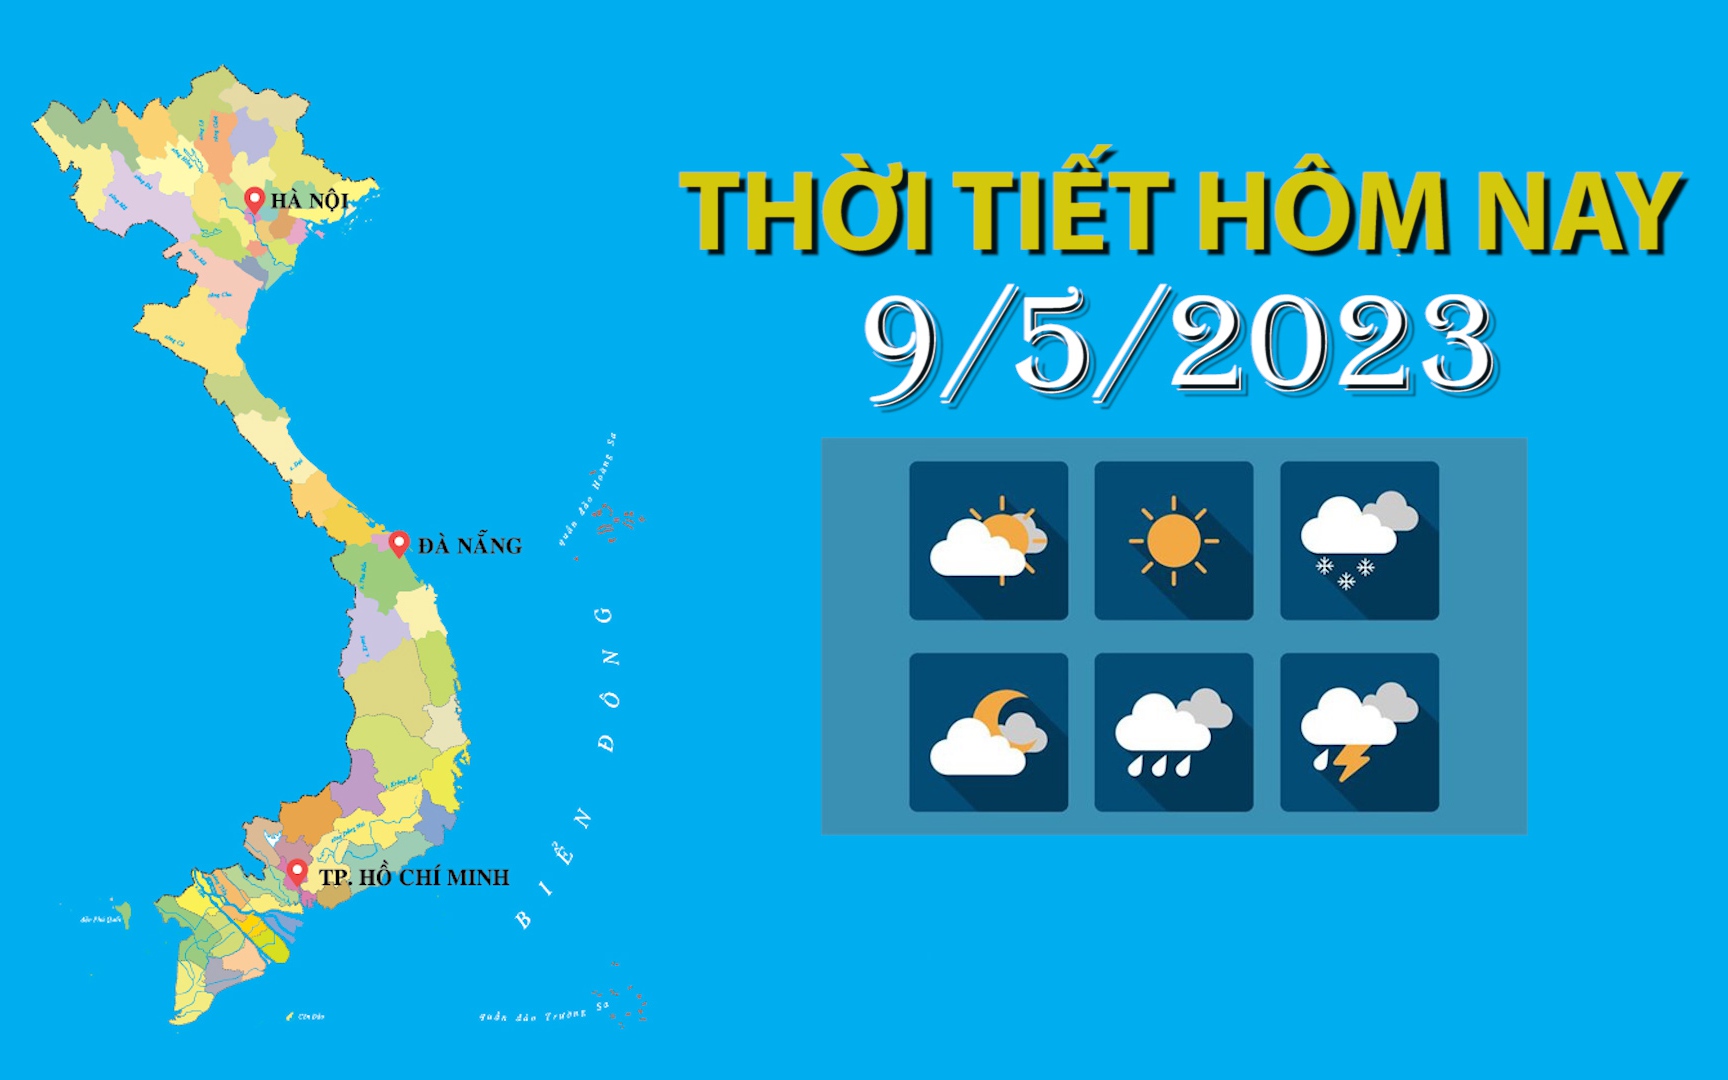 Thời tiết hôm nay 9/5/2023: Tây Bắc mưa to cục bộ, Nam Trung Bộ, Tây Nguyên và Nam Bộ chiều tối mưa vừa mưa to